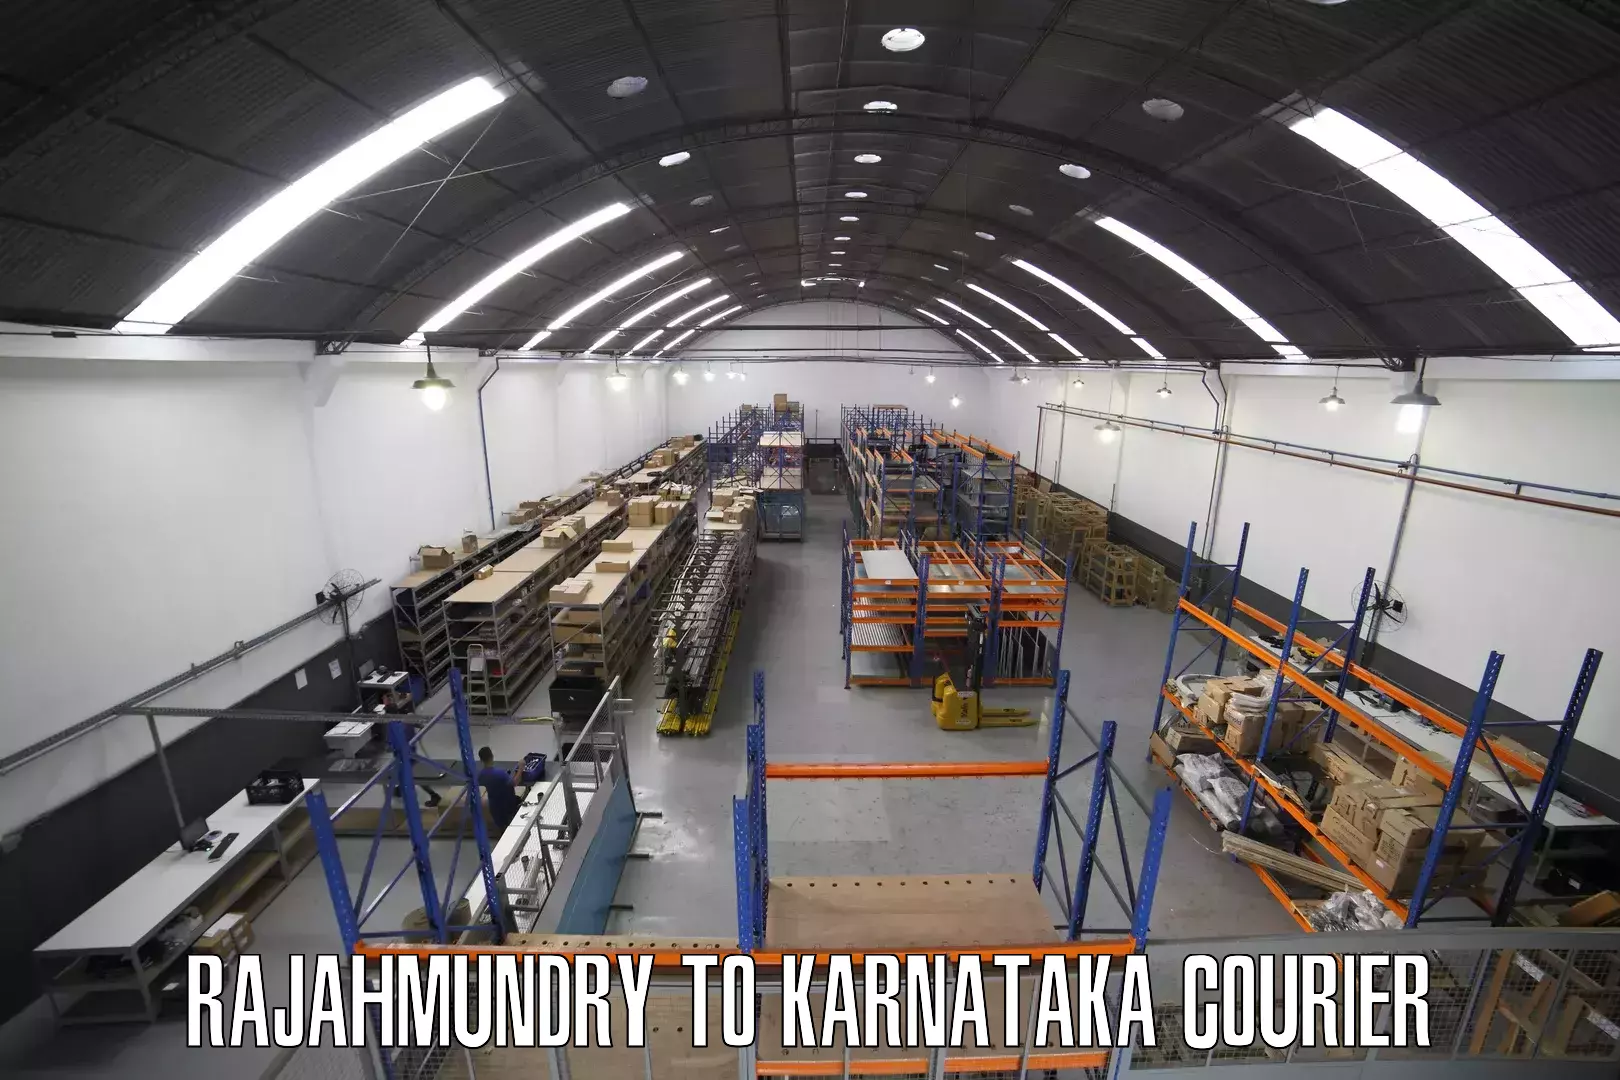 Weekend courier service Rajahmundry to Karkala